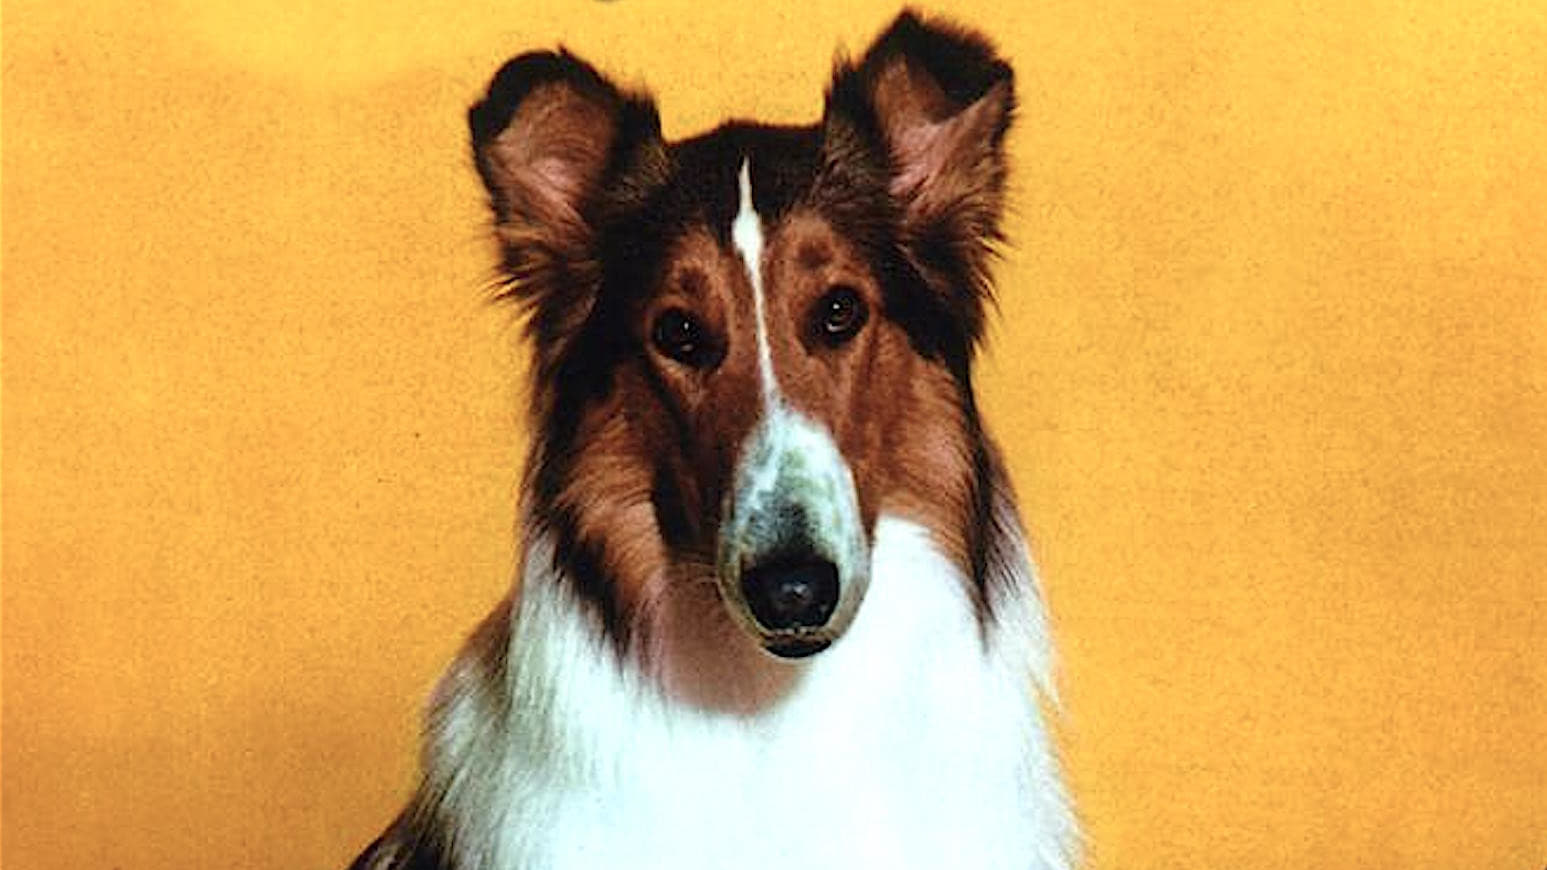 El retorno de Lassie